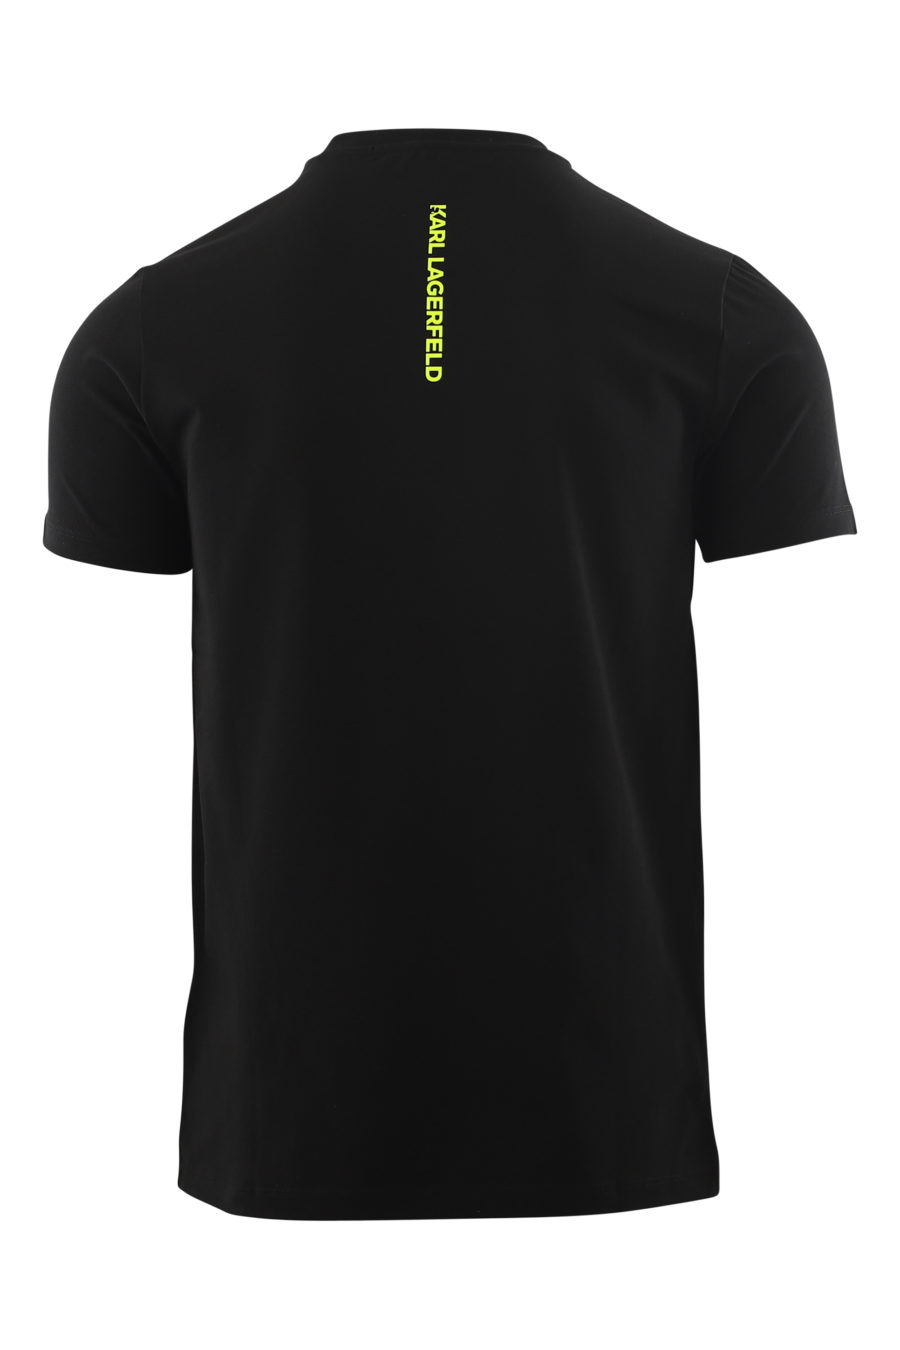 Camiseta negra con logo en multicolores - IMG 6545